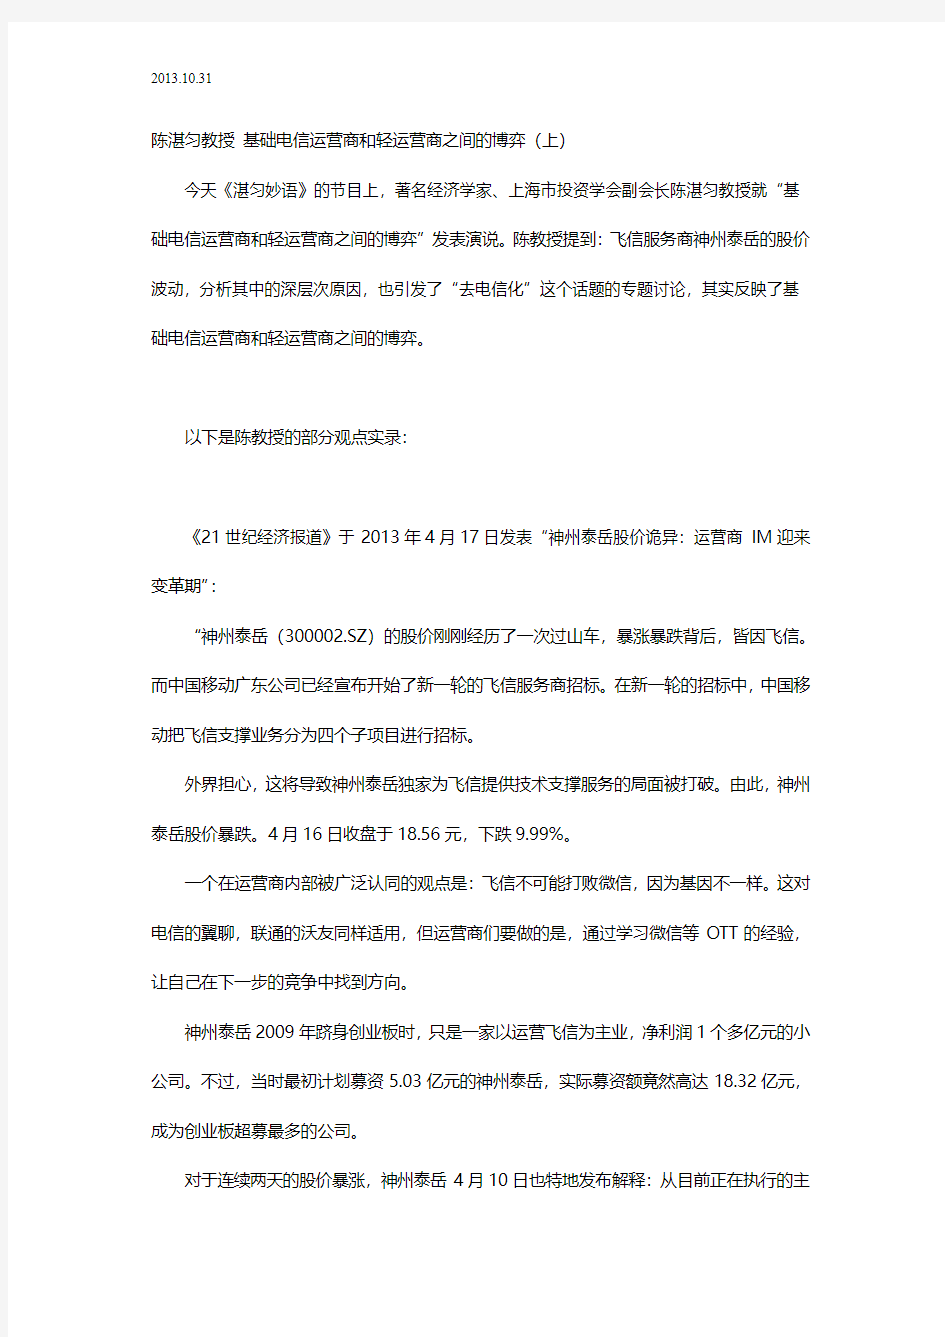 2013.10.31 陈湛匀教授 基础电信运营商和轻运营商之间的博弈(上)